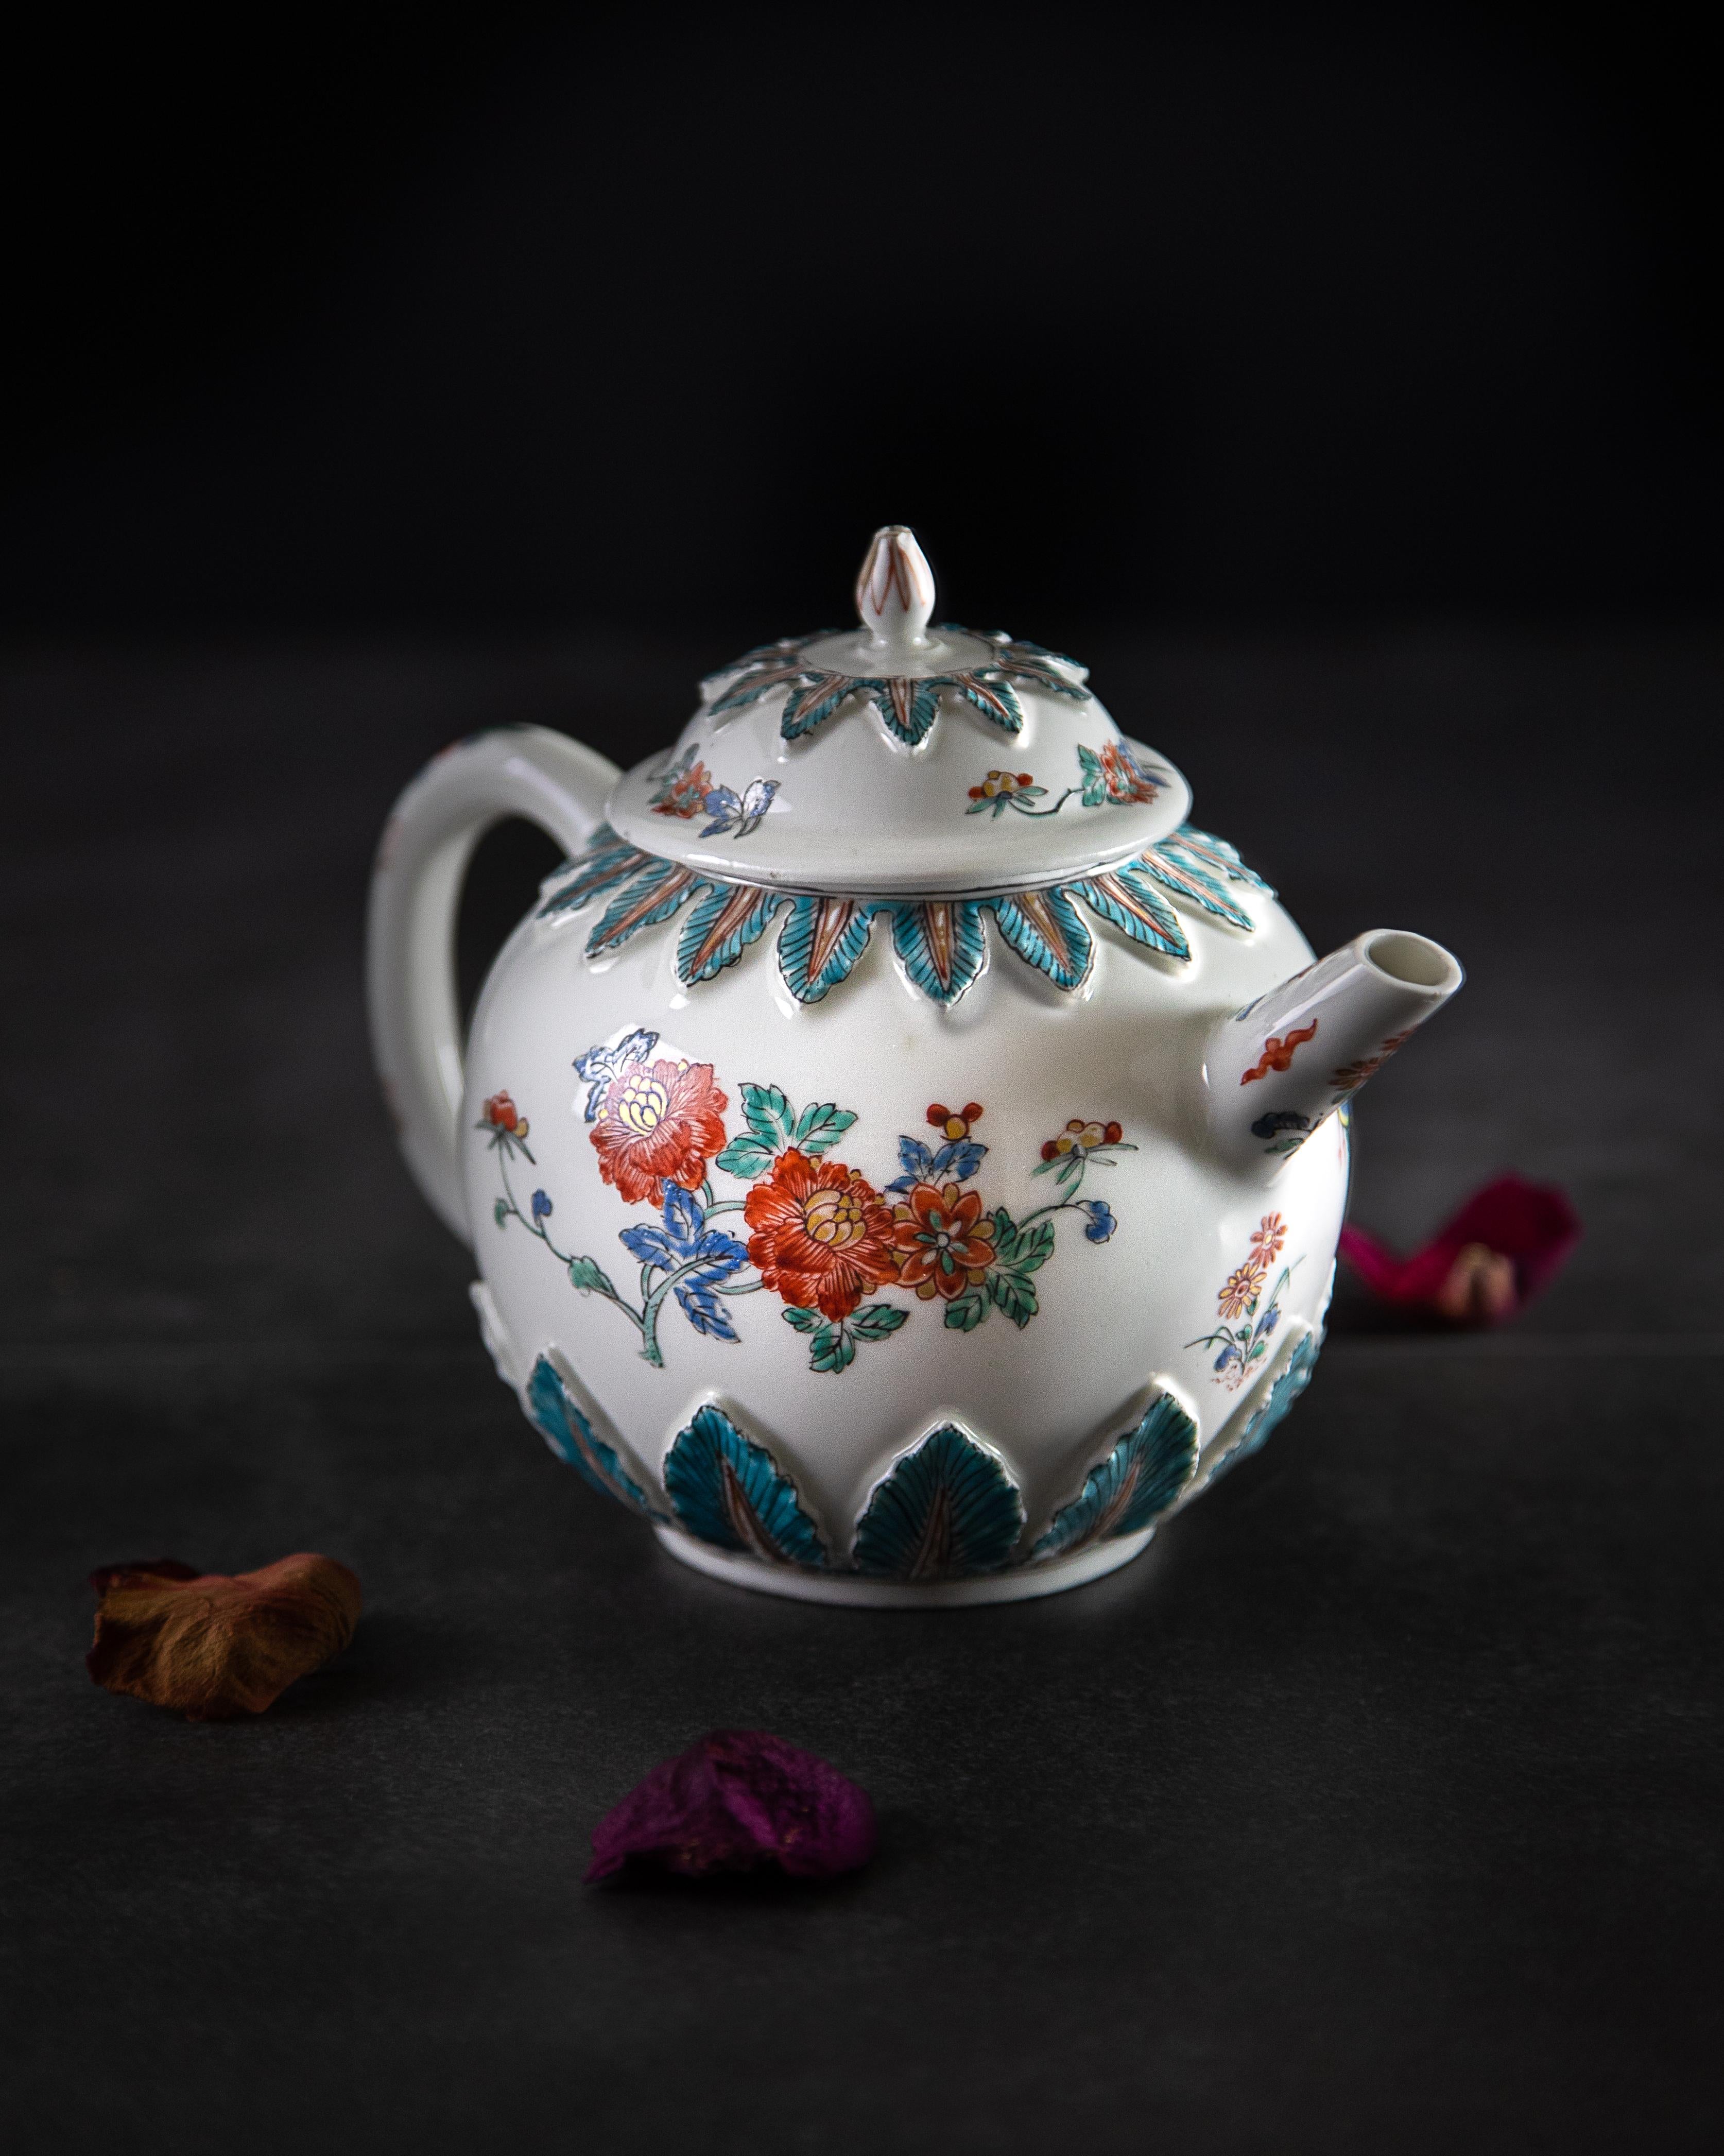 Eine frühe Meissener Porzellan-Teekanne aus der Zeit um 1715, dekoriert von einem niederländischen Hausmaler um 1730-1740.

Die Teekanne ist in einer Kakiemon-Palette aus Türkis, Rot, Blau und Gelb dekoriert und mit Vergoldungen verziert. Der